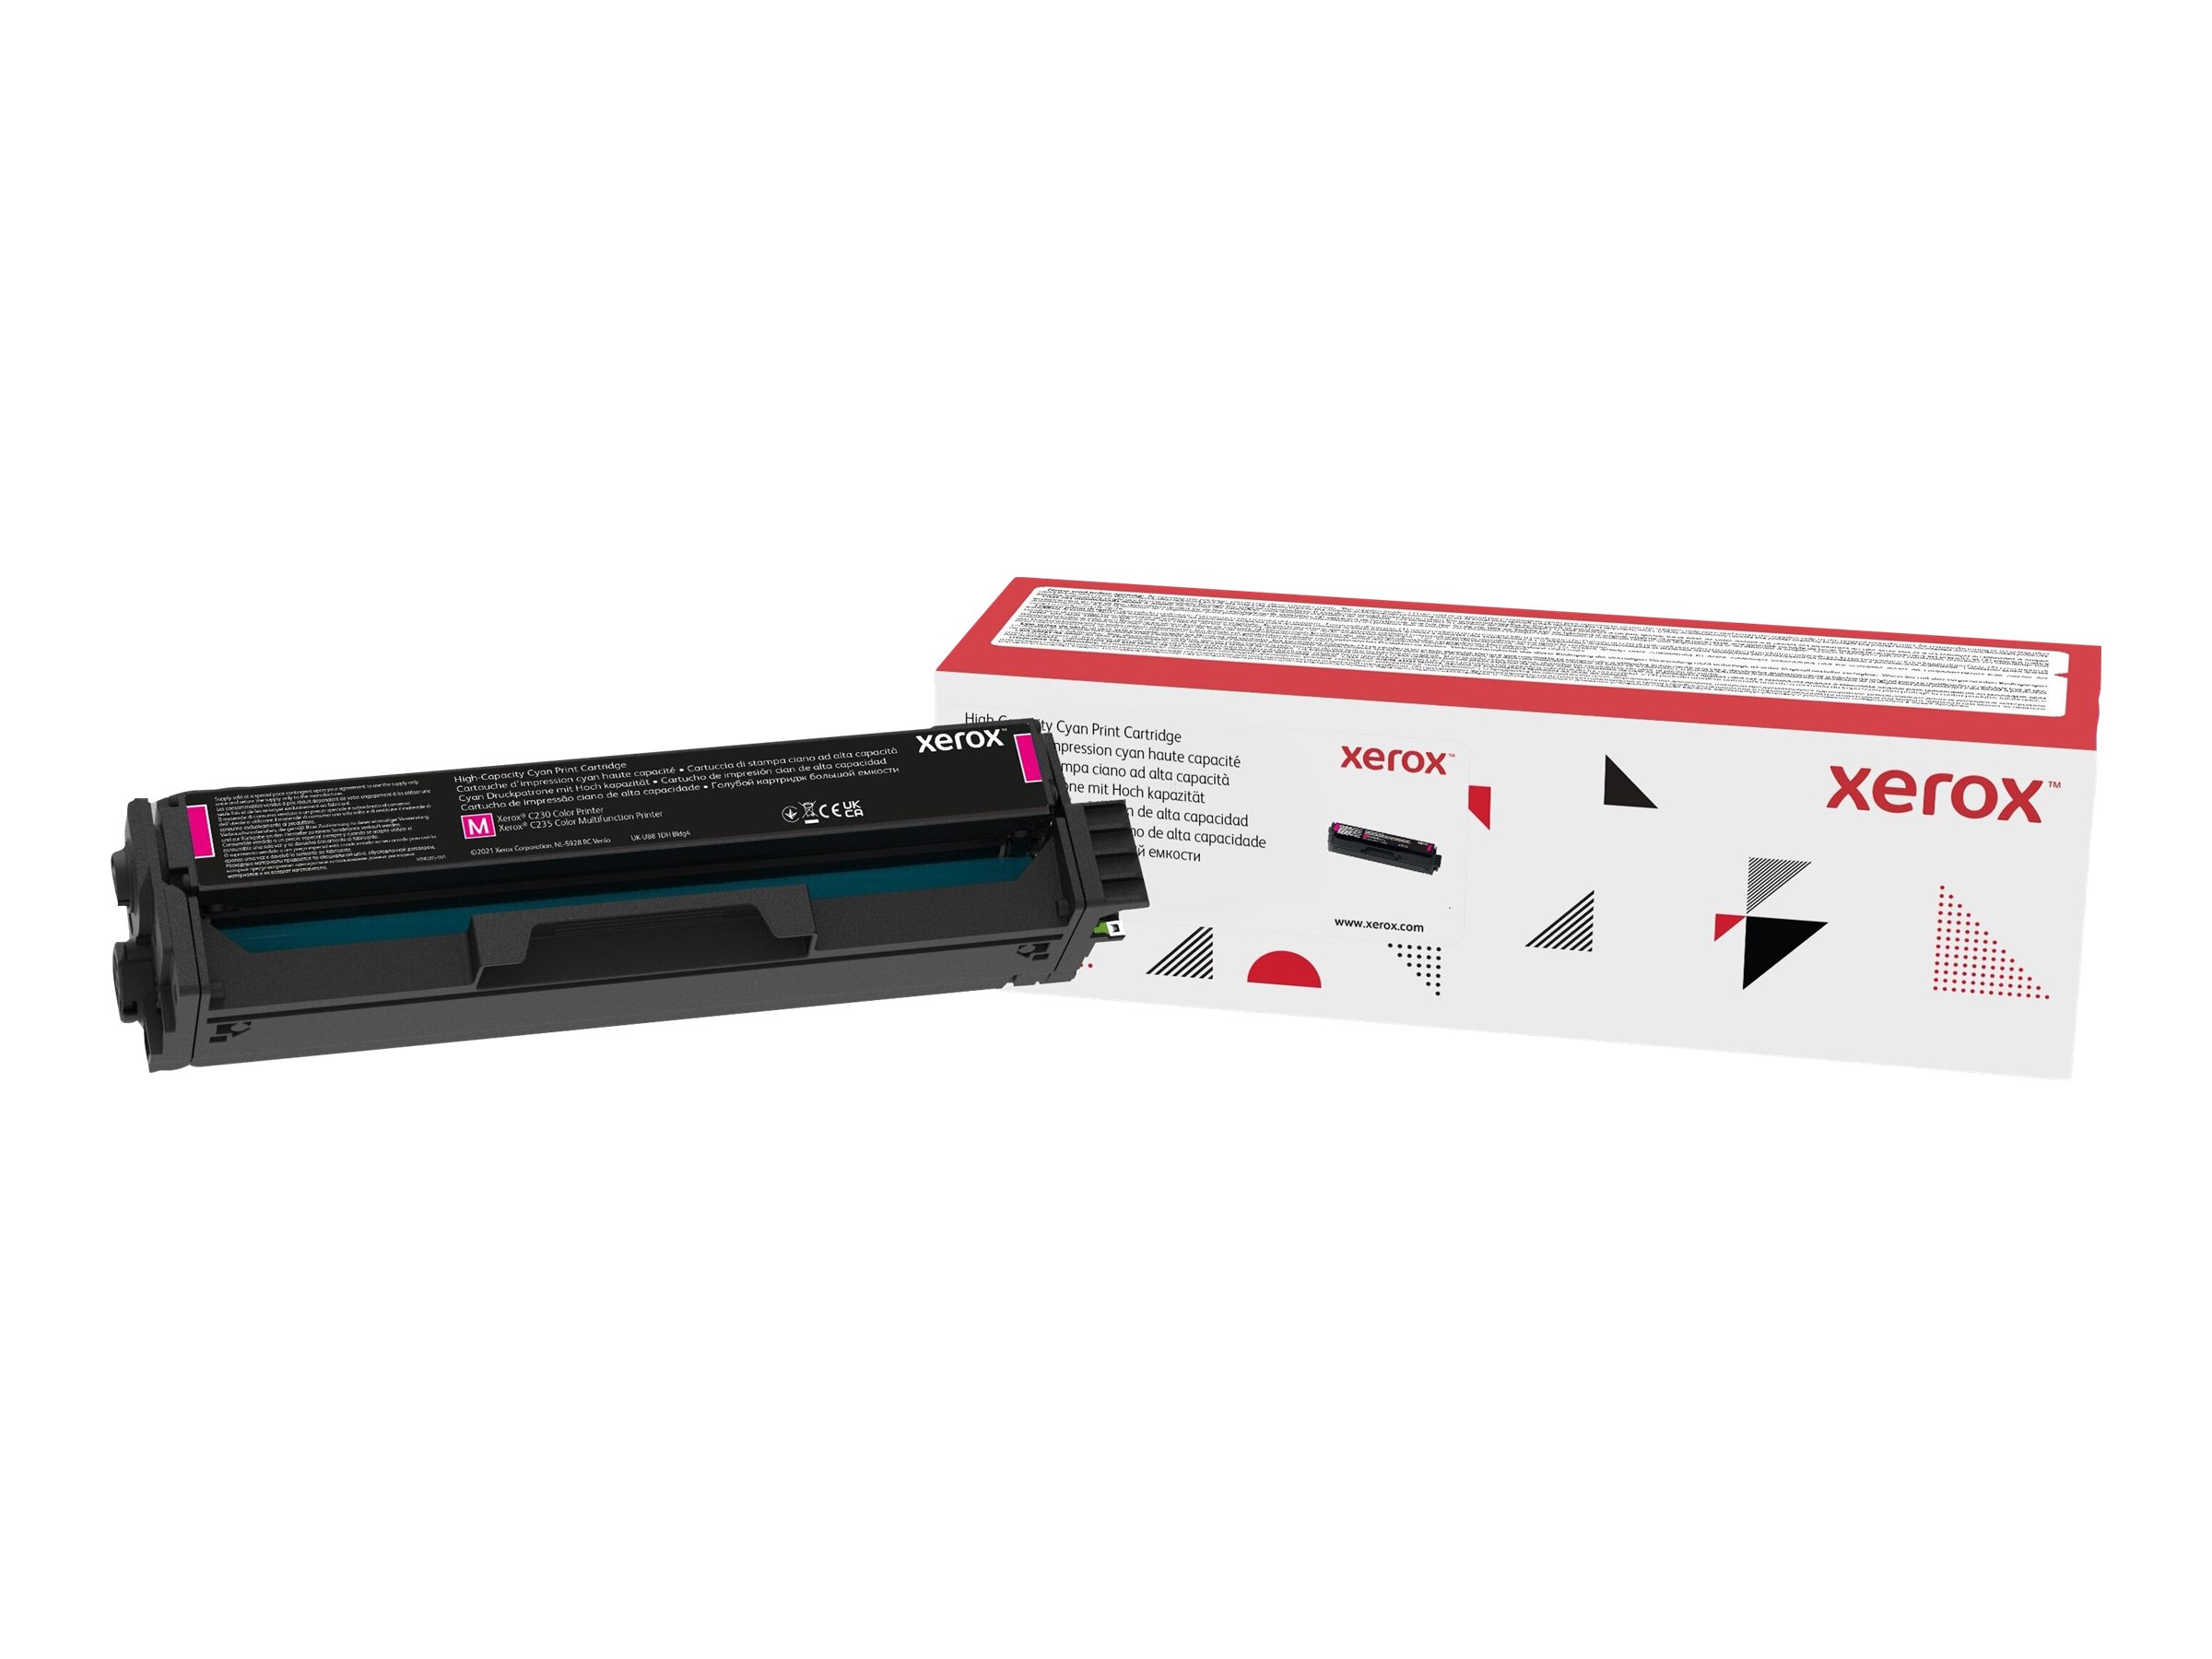 Xerox - Haute capacité - magenta - original - cartouche de toner - pour Xerox C230, C230/DNI, C230V_DNIUK, C235, C235/DNI, C235V_DNIUK - 006R04393 - Cartouches de toner